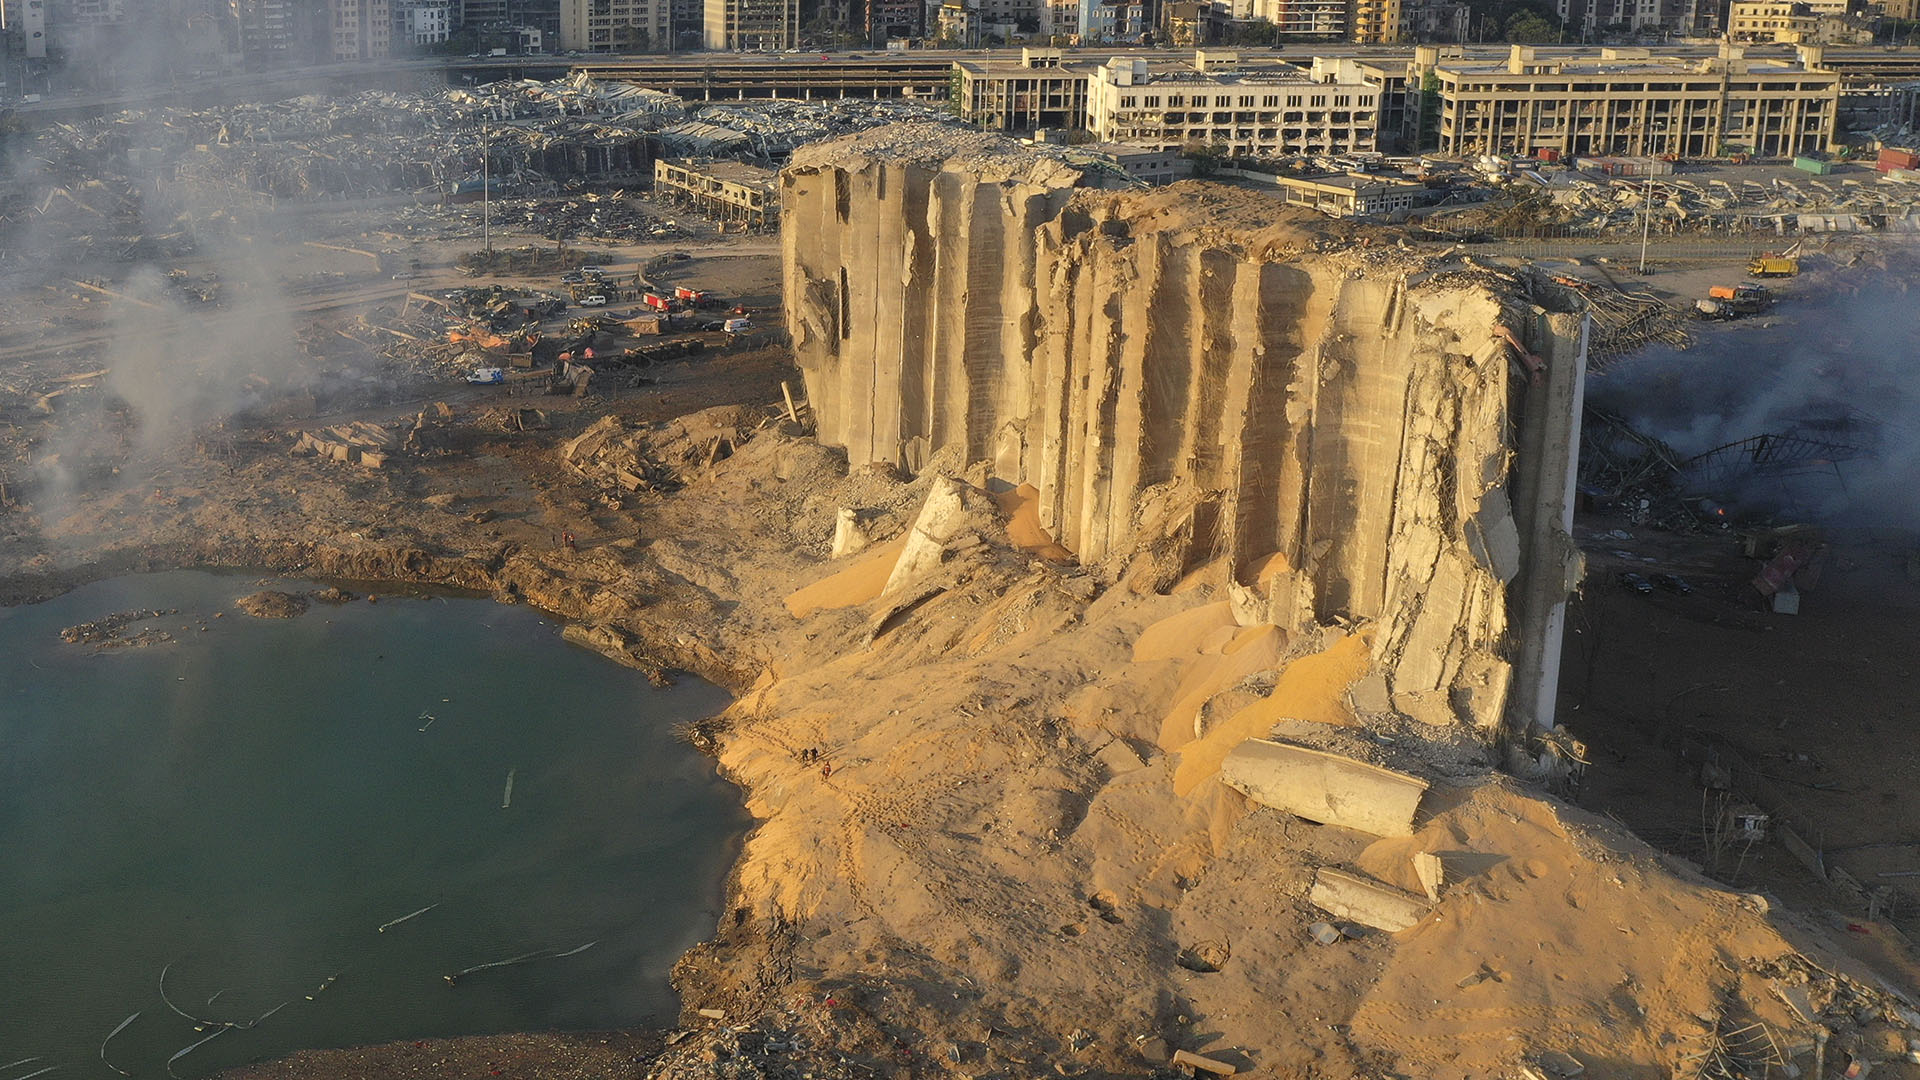 El silo en escombros después de la mega explosión de tres kilotones en el puerto de Beirut, Líbano (Foto AP / Hussein Malla)